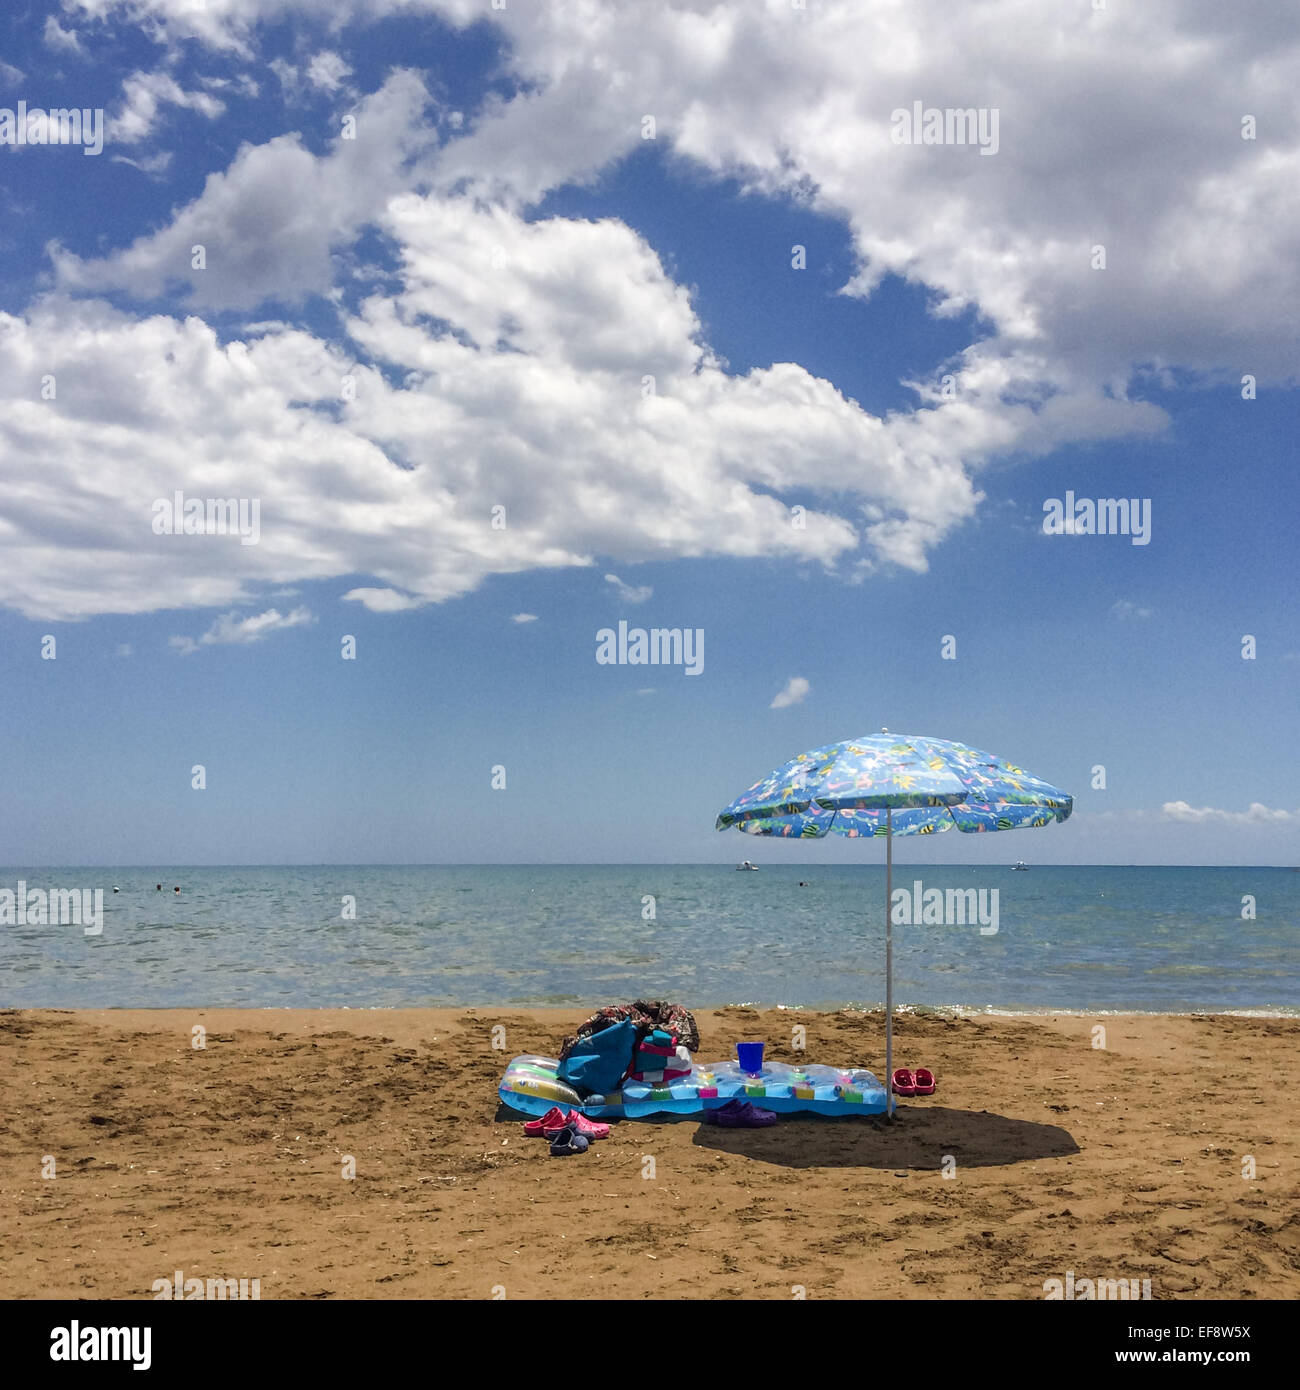 Grecia, Zákinthos, Piscina balsa y sombrilla en la playa de arena vacía Foto de stock